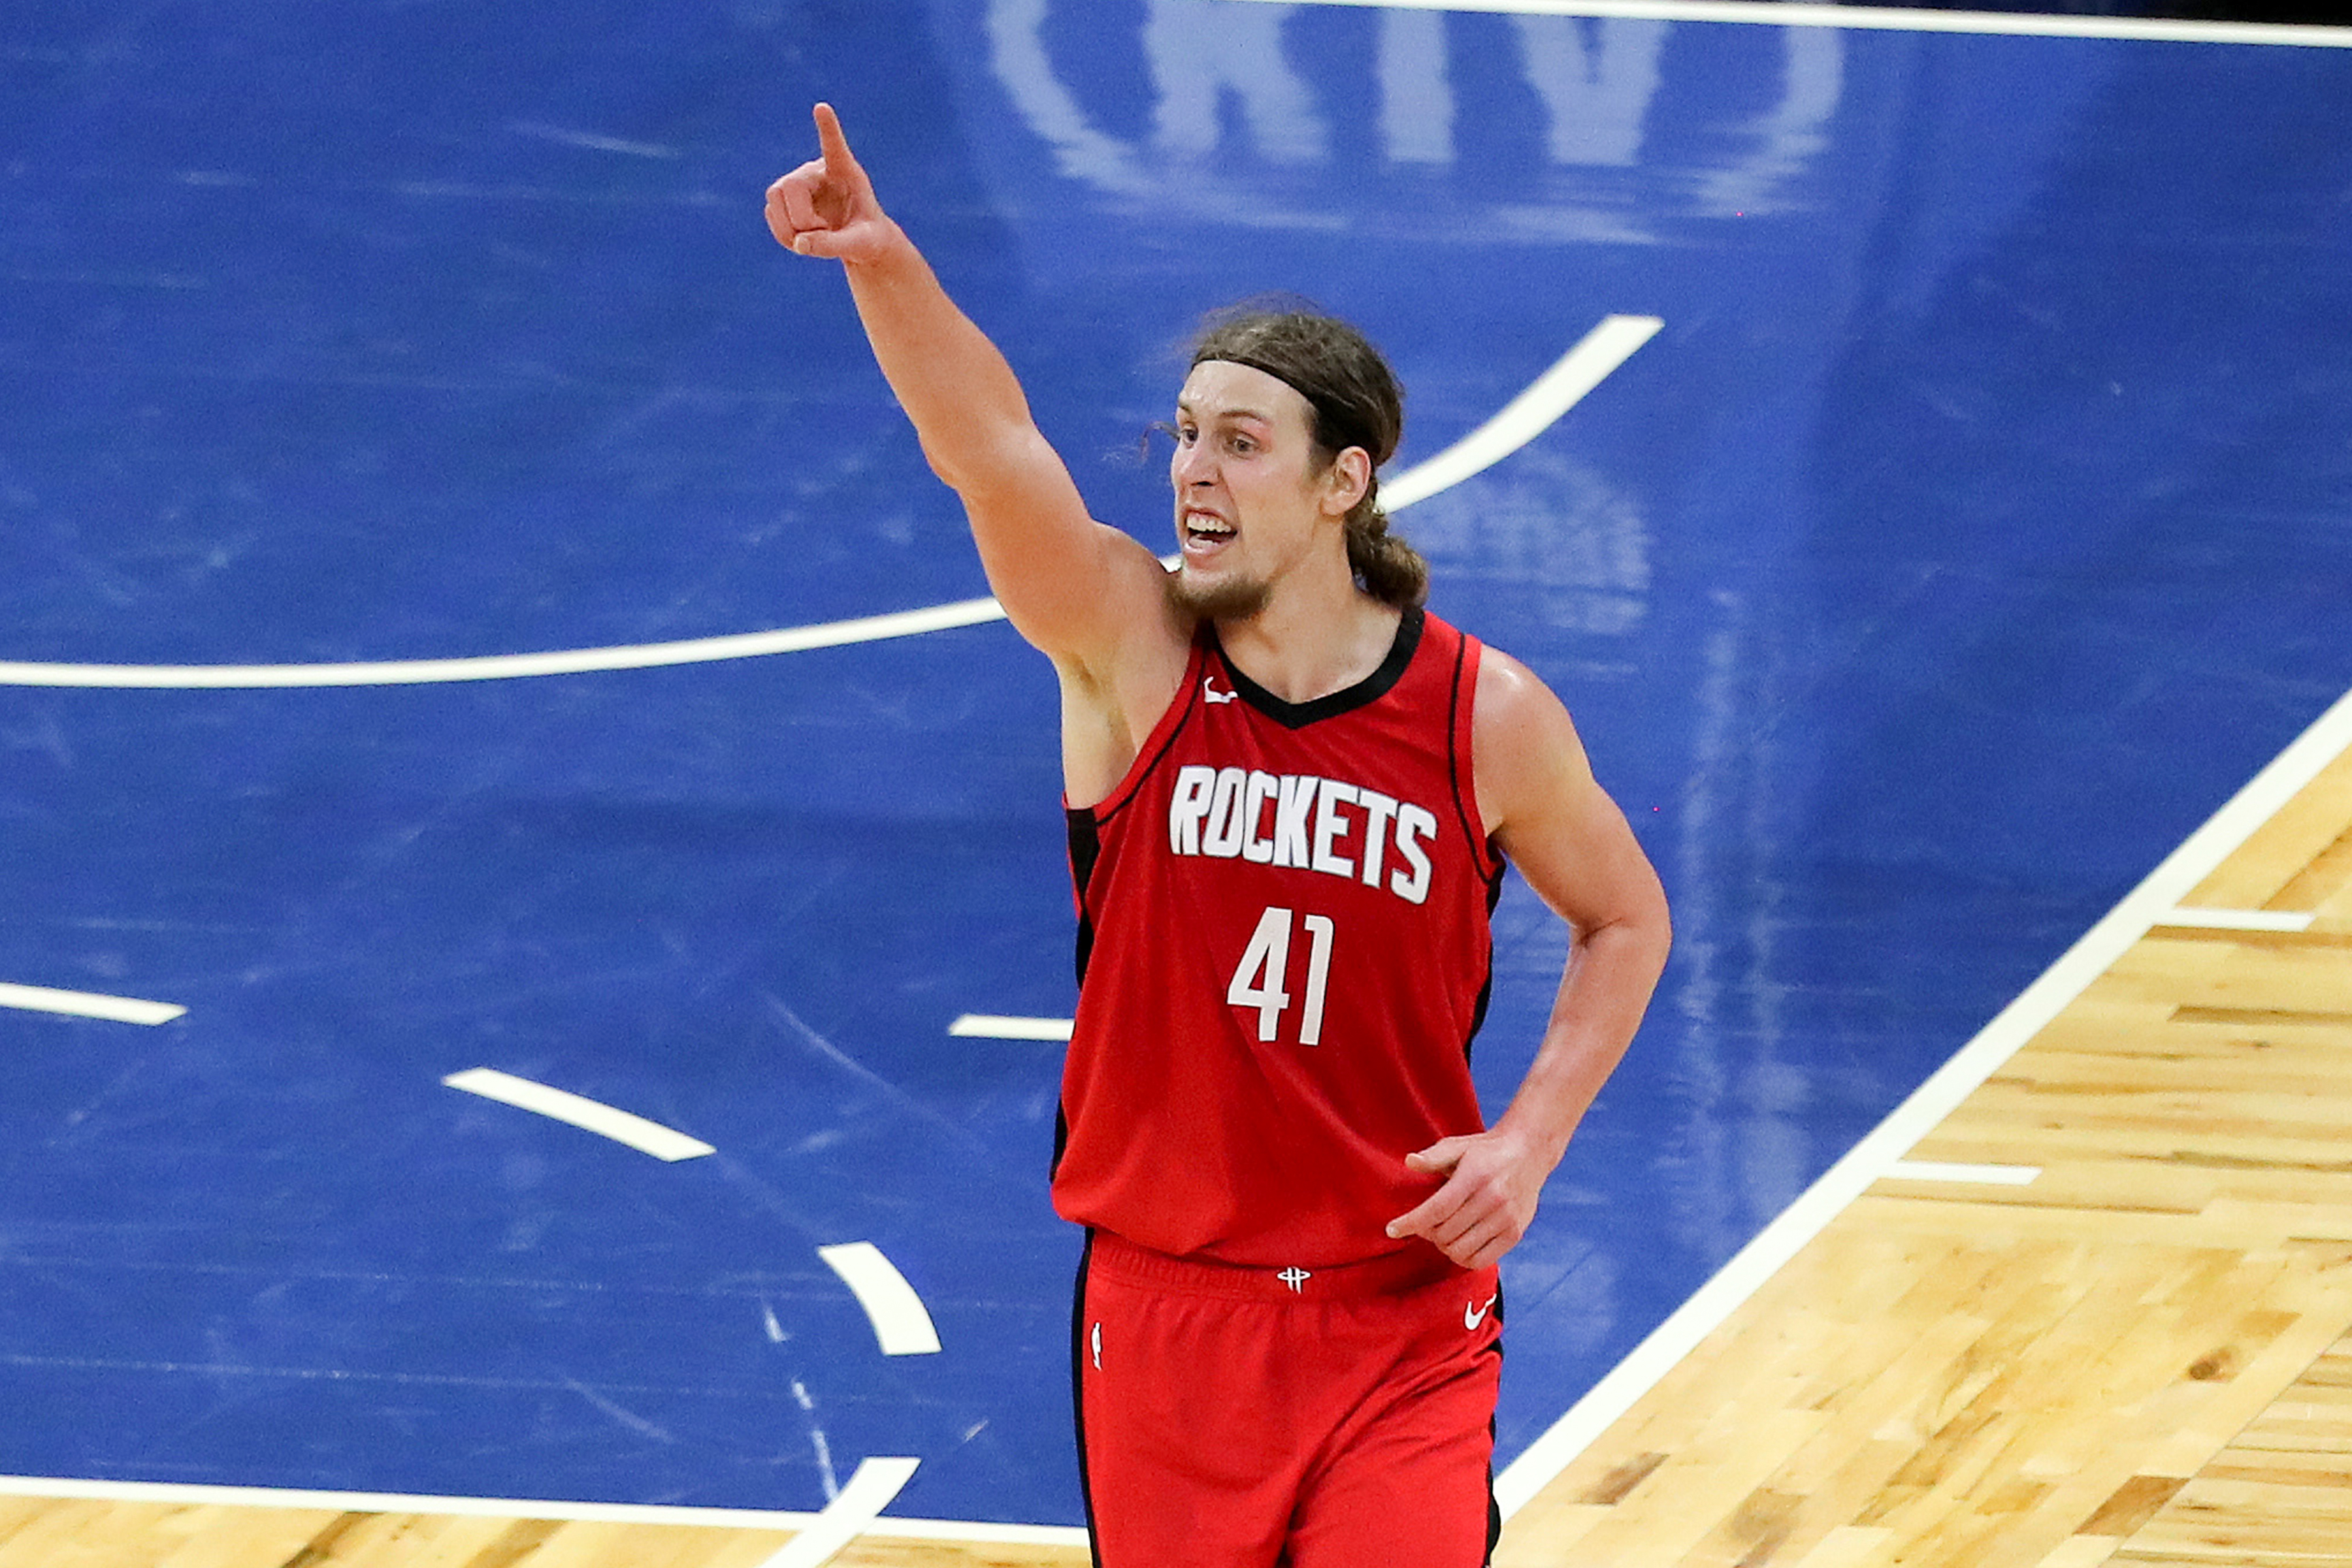 Rockets NBA Summer League roster: Full list of players, depth